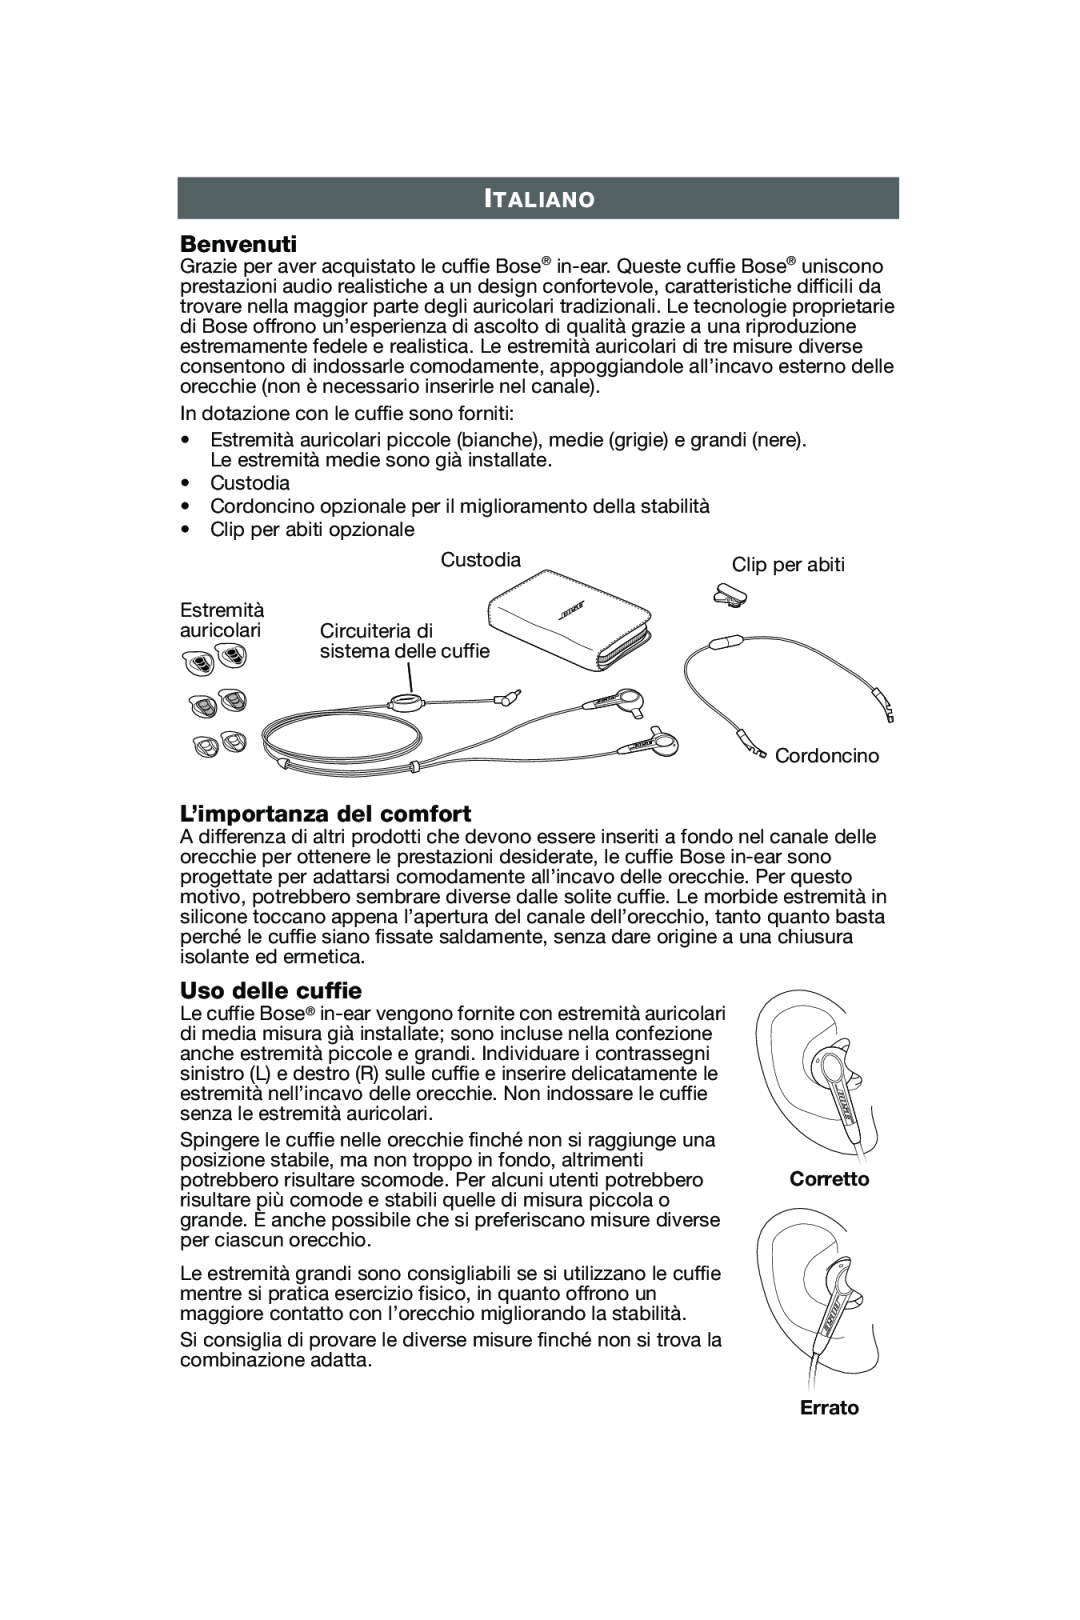 Bose In-Ear Headphones manual Benvenuti, L’importanza del comfort, Uso delle cuffie, Italiano, Errato 